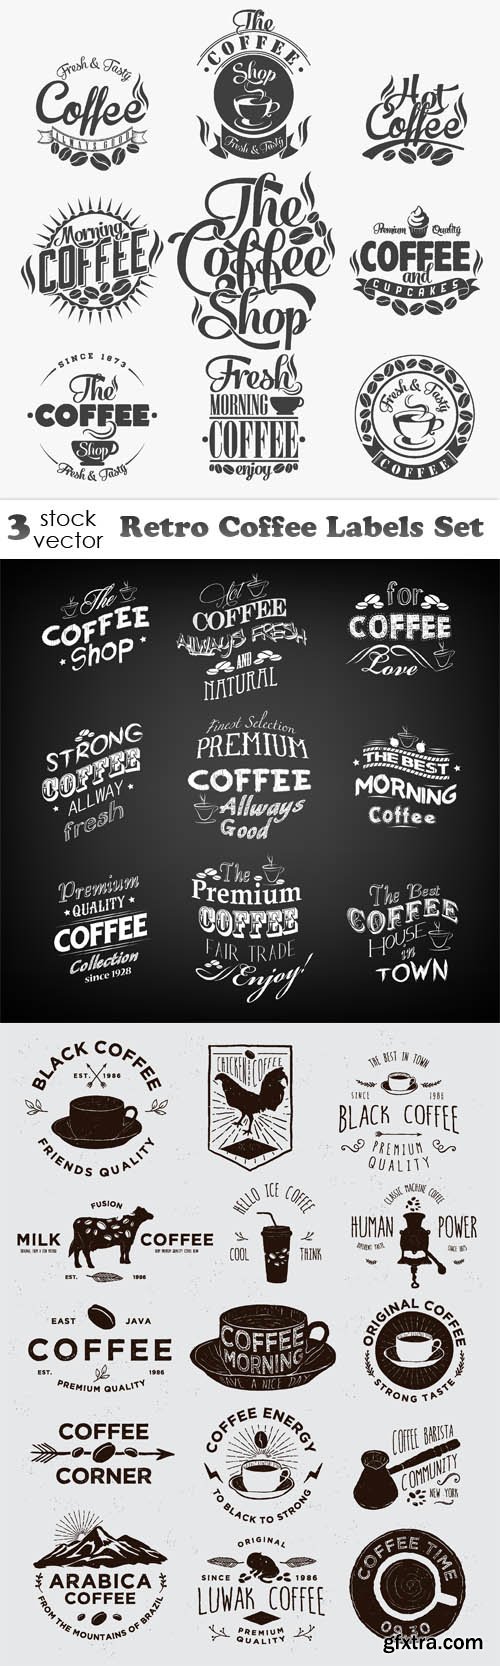 Vectors - Retro Coffee Labels Set